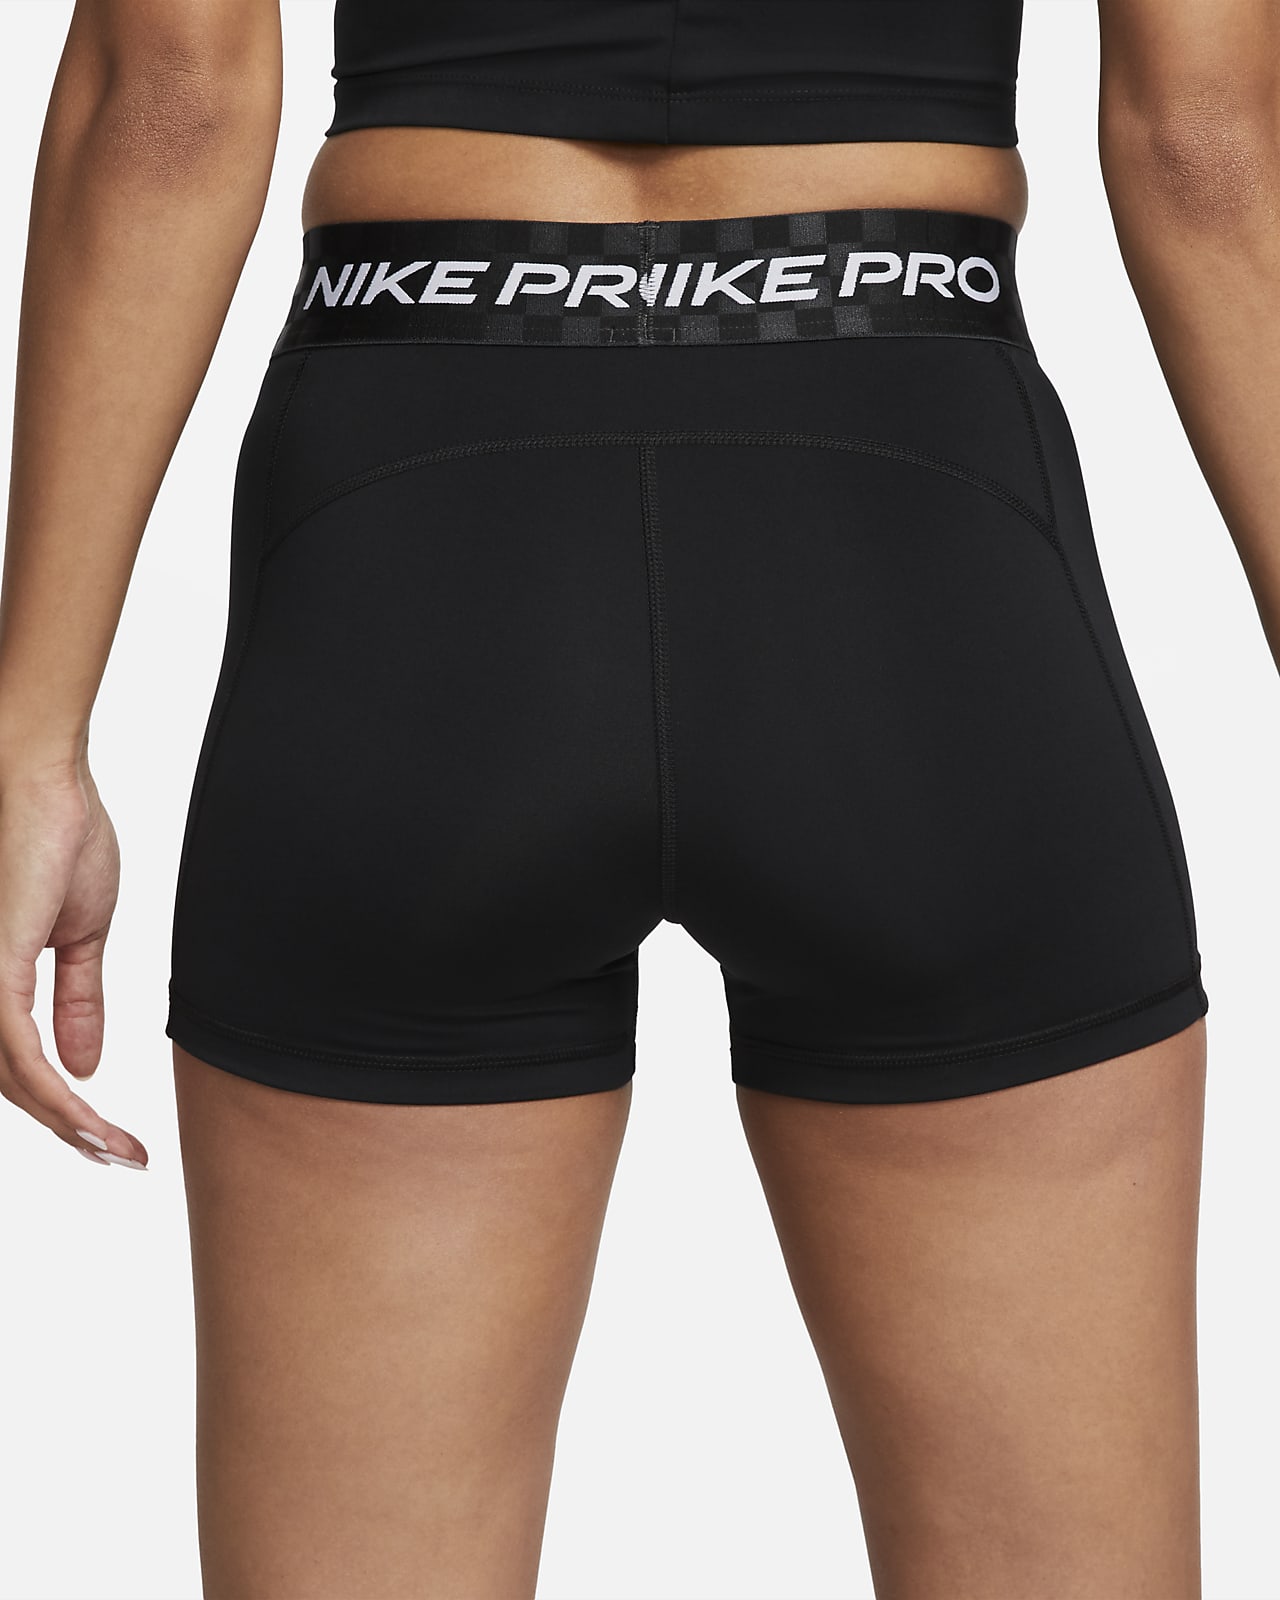 Pantalón para Entrenamiento NIke Pro de Mujer